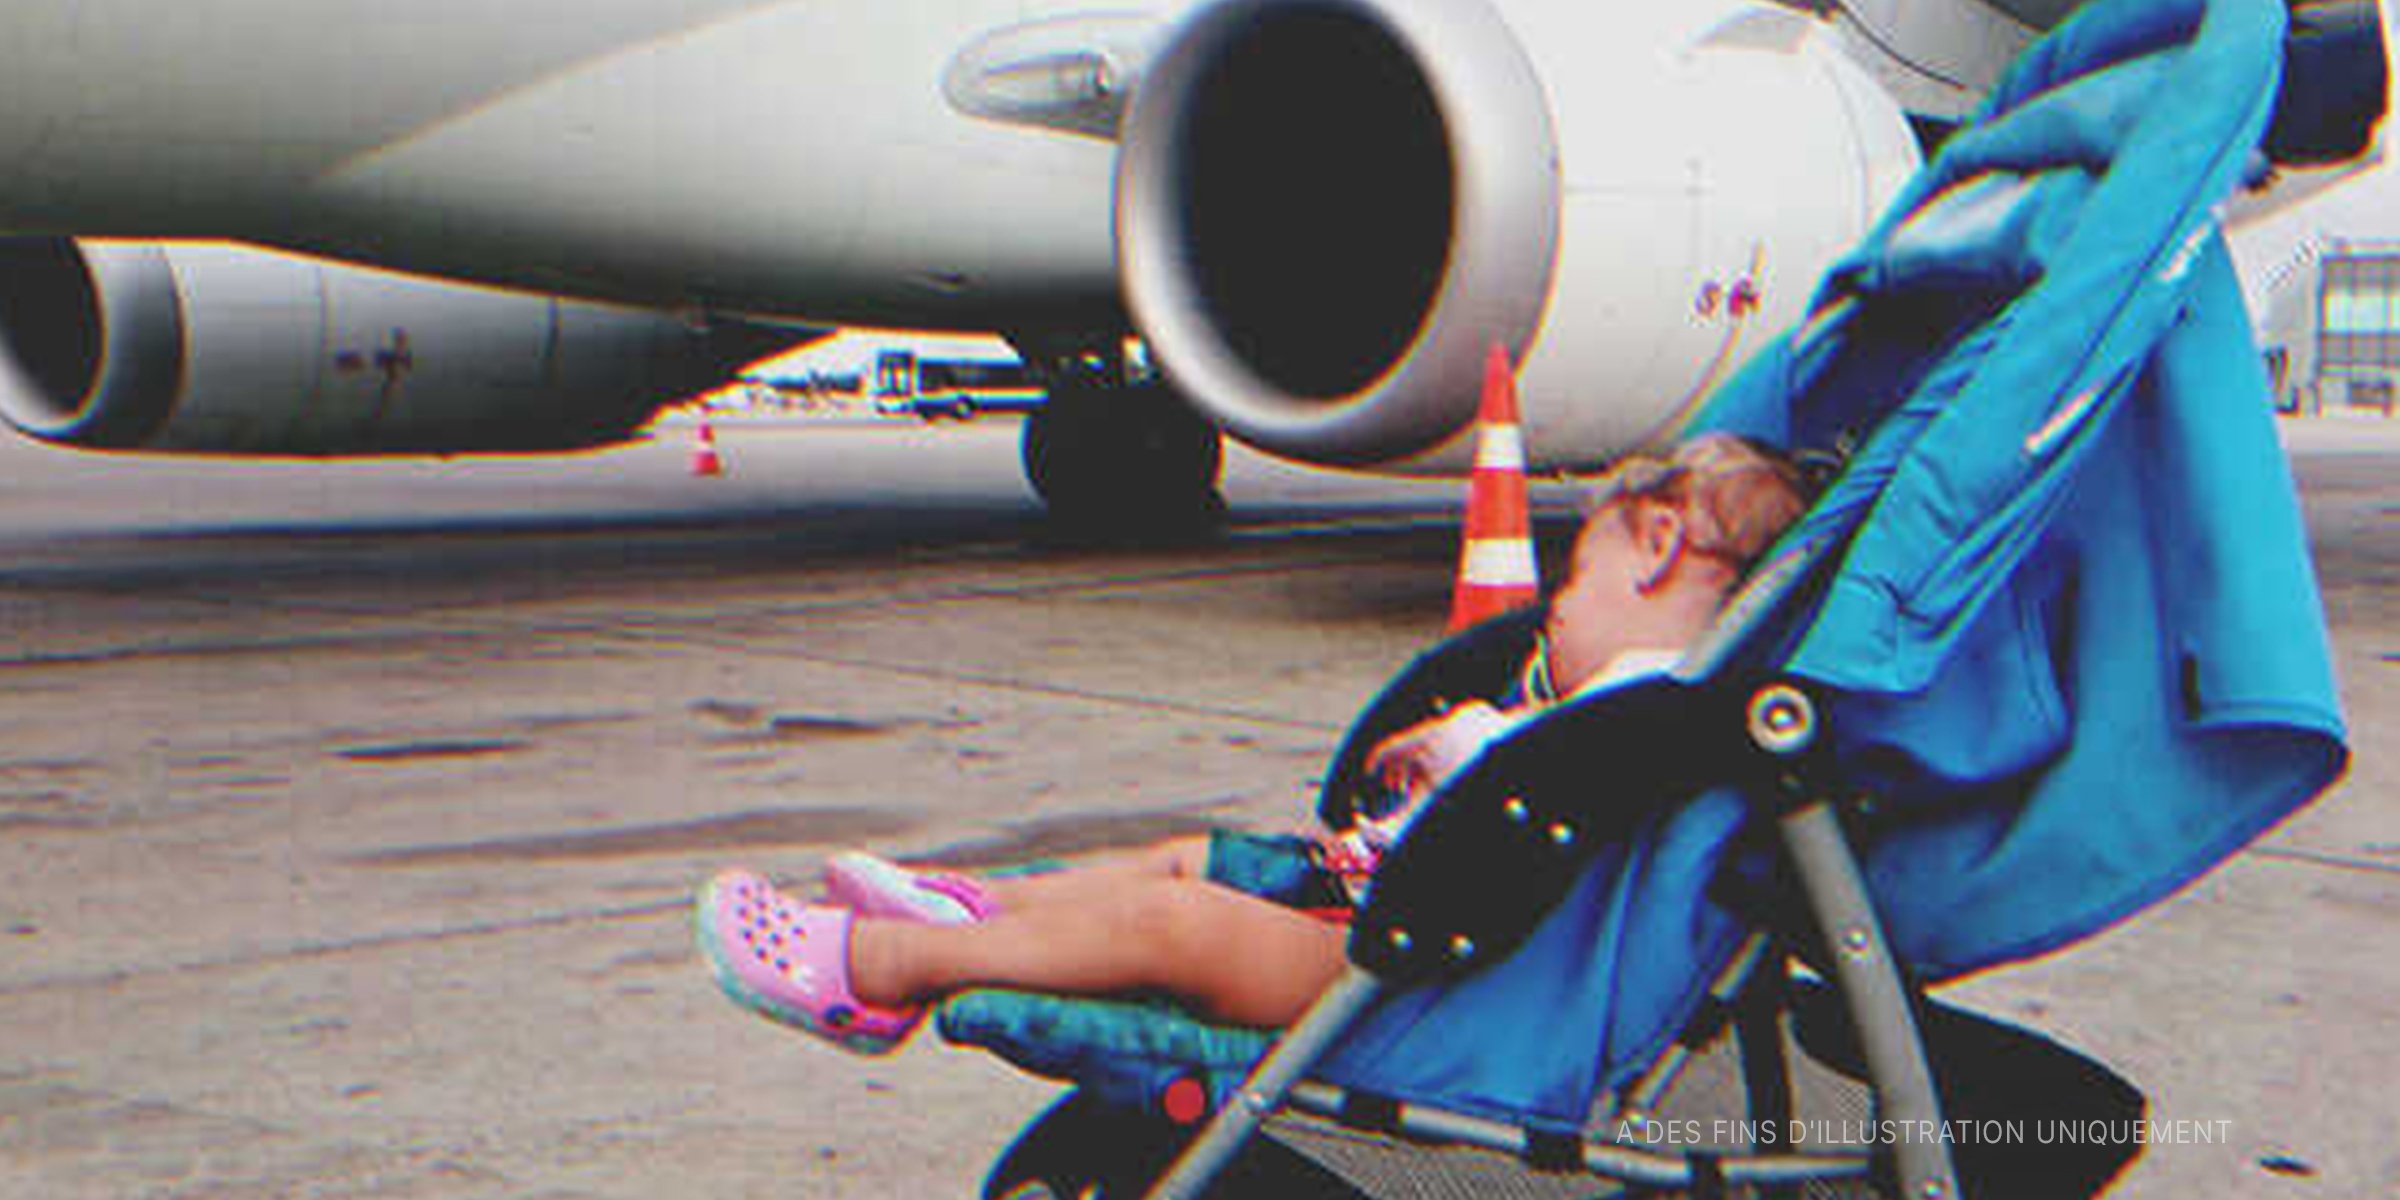 Un bébé dans une poussette sur une piste d'aéroport | Getty Images